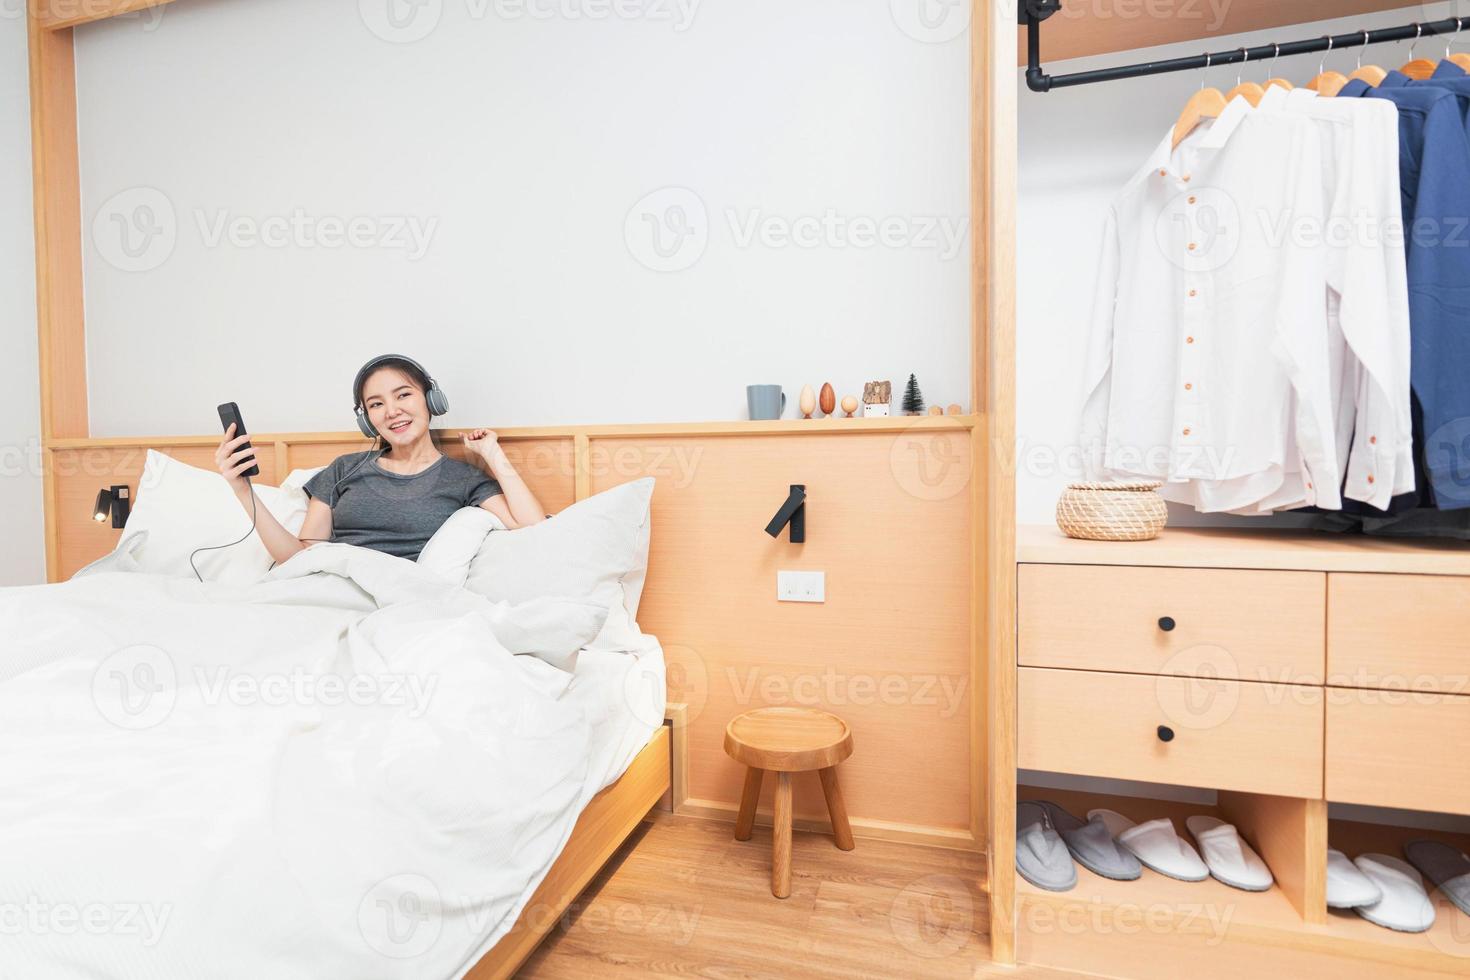 schlafzimmerkonzept auf dem bequemen bett ein mädchen, das ihre lieblingslieder hört, indem es morgens einen kopfhörer trägt foto